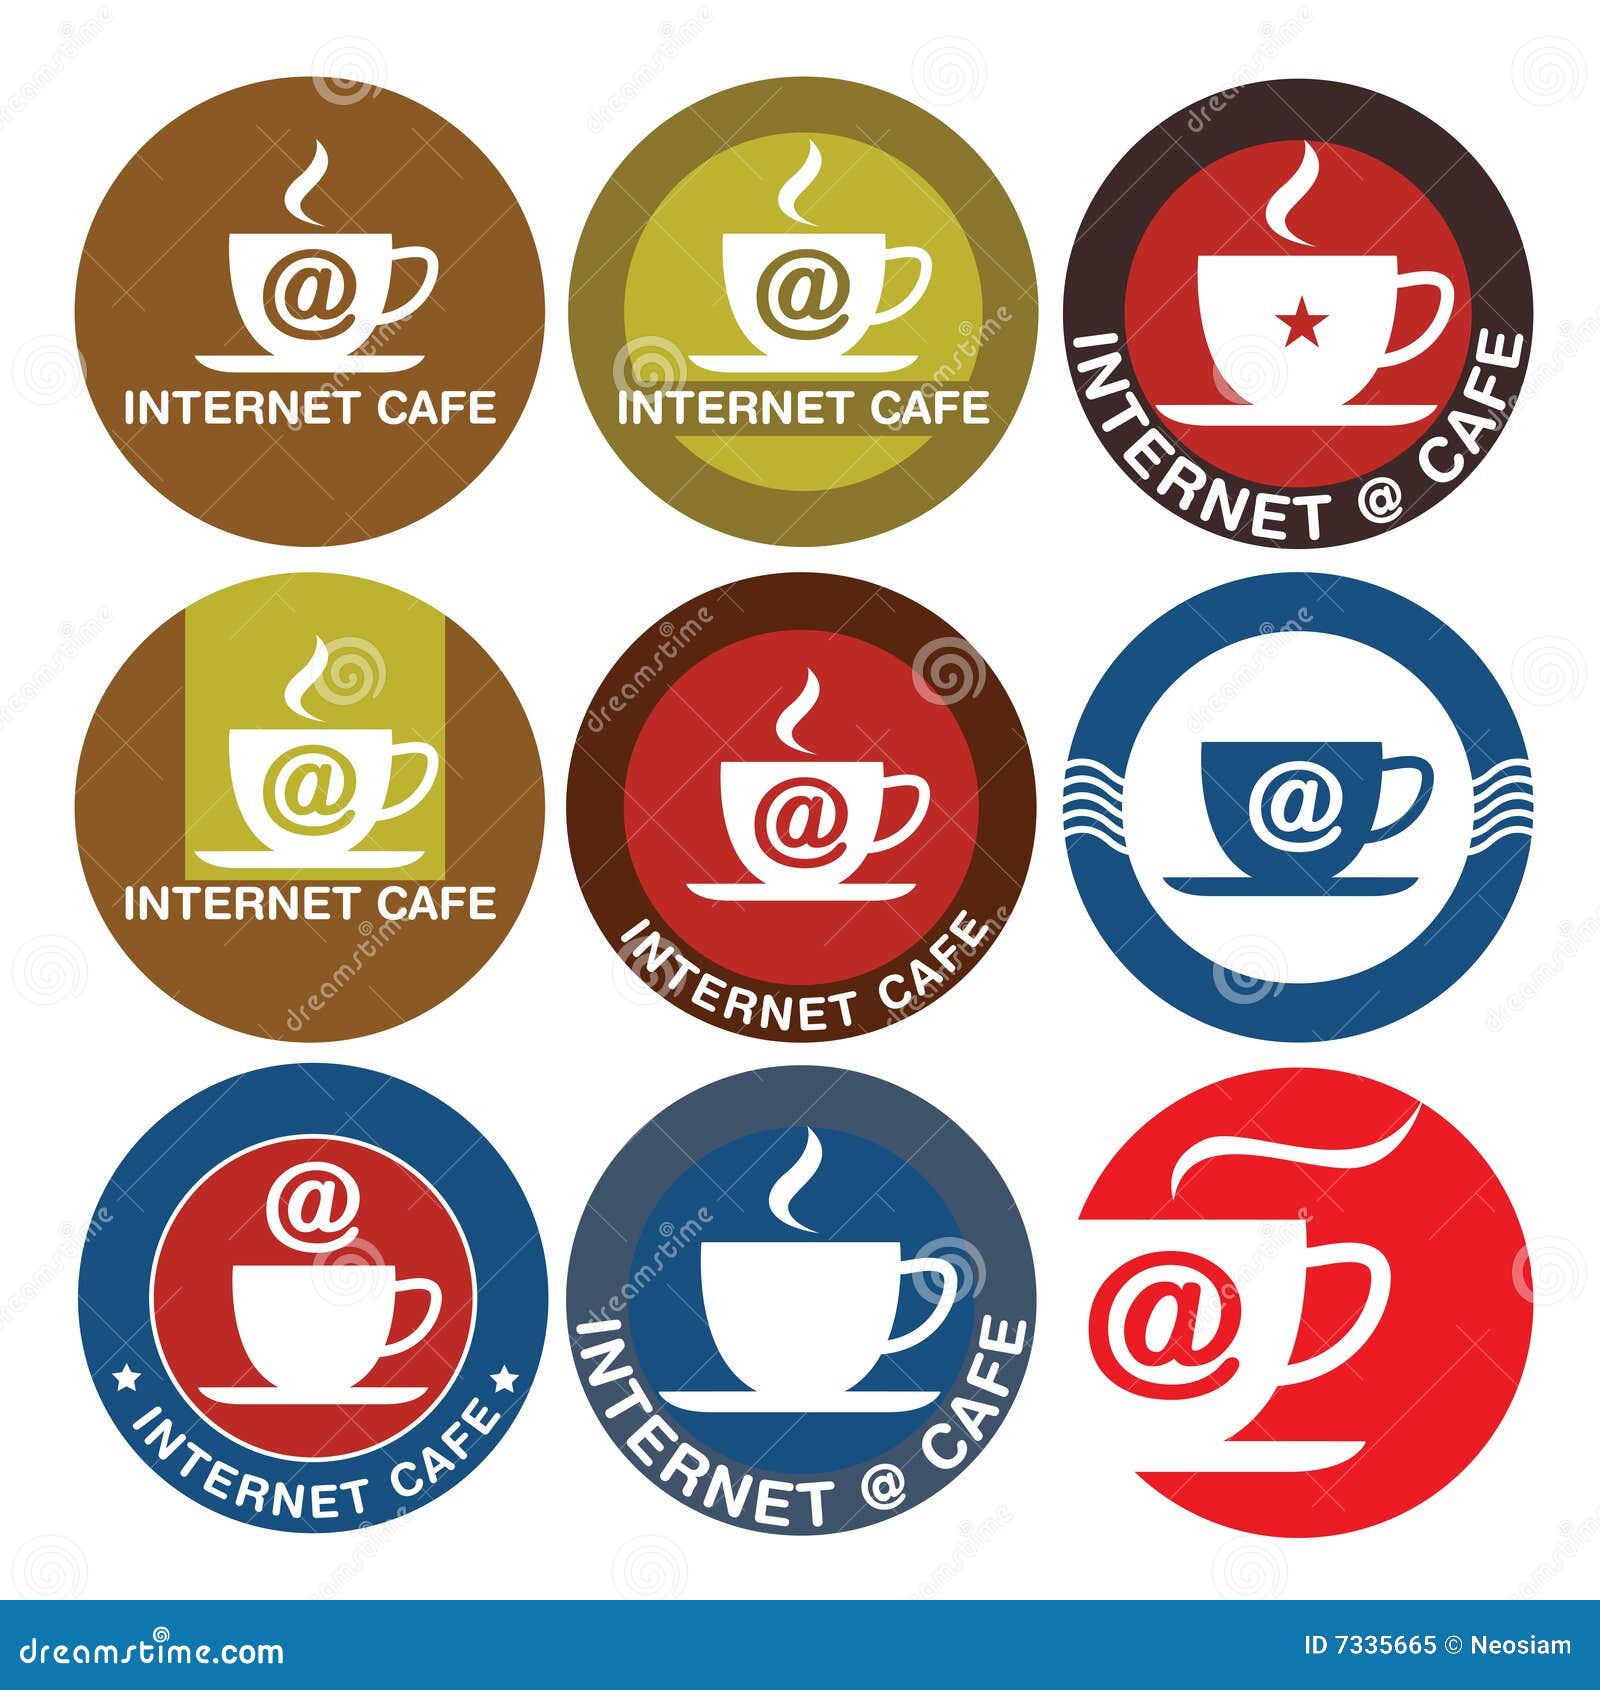 Internet Cafe  logo  design stock vector Illustration of 